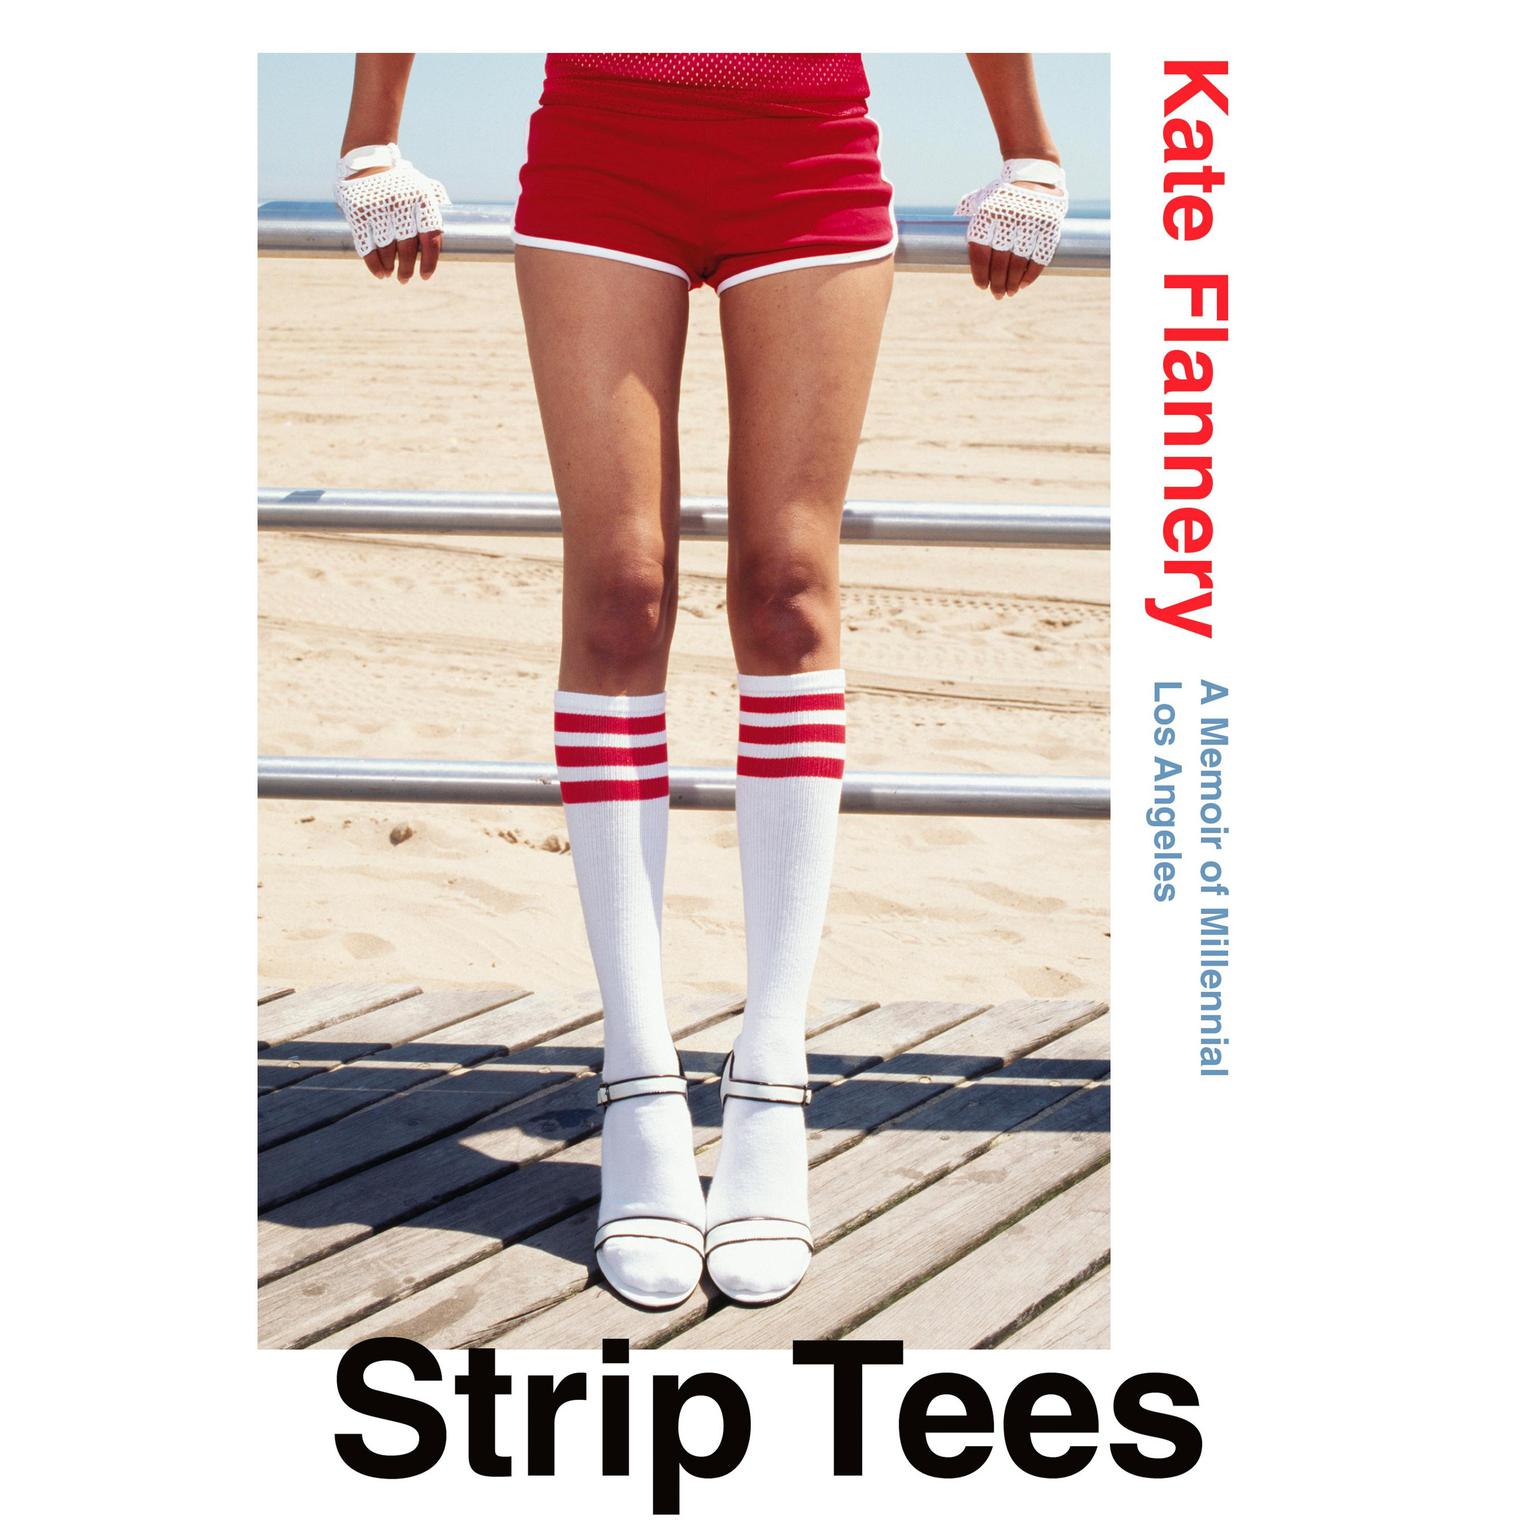 Strip Tees: A Memoir of Millennial Los Angeles Audiobook, by Kate Flannery